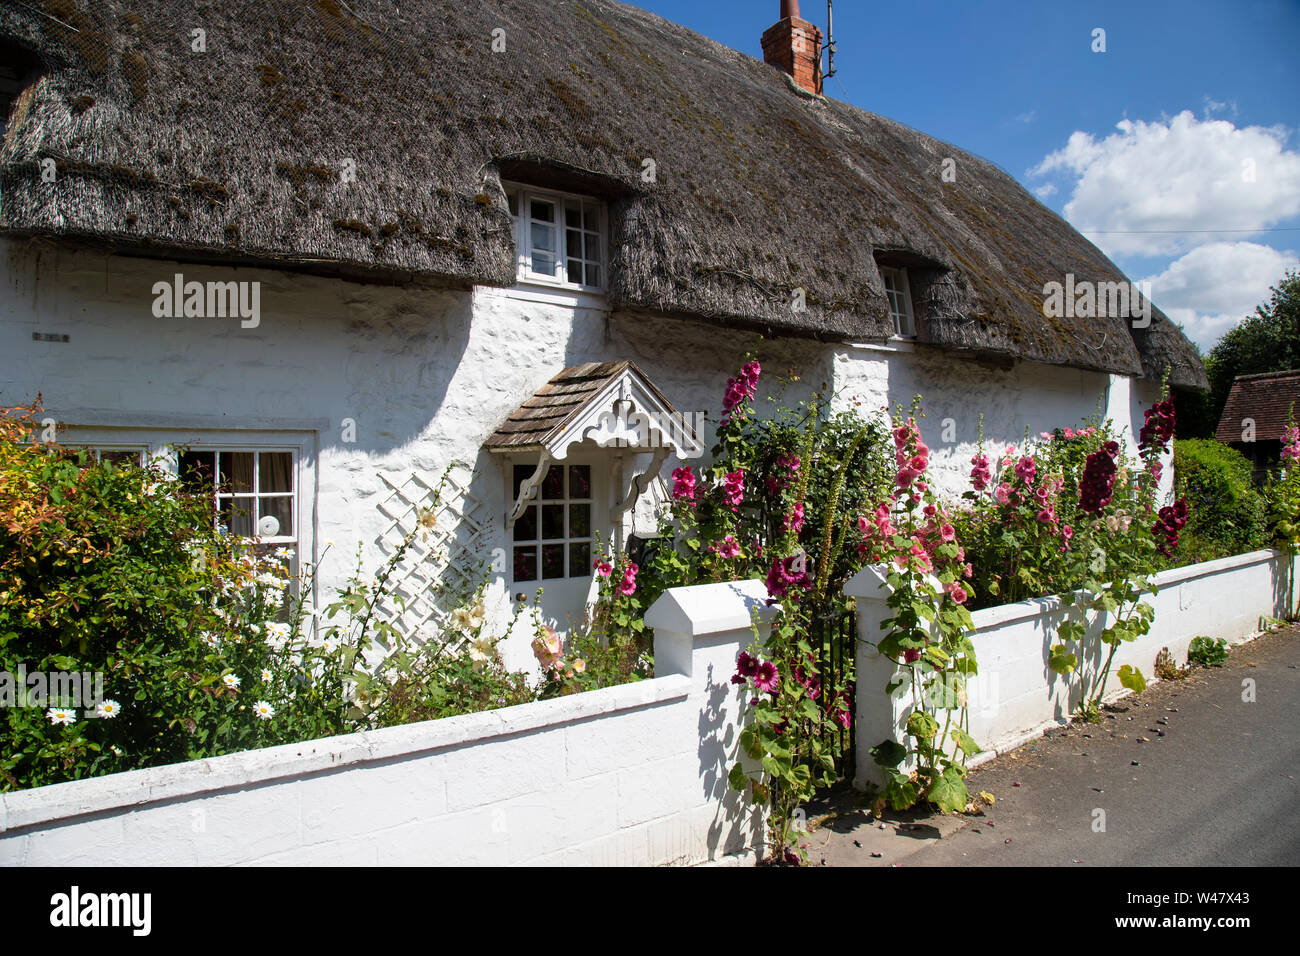 Un chaume typique blanchi à la chaux et de l'anglais country cottage rempli de fleurs en anglais traditionnel, Avebury Wiltshire. Banque D'Images